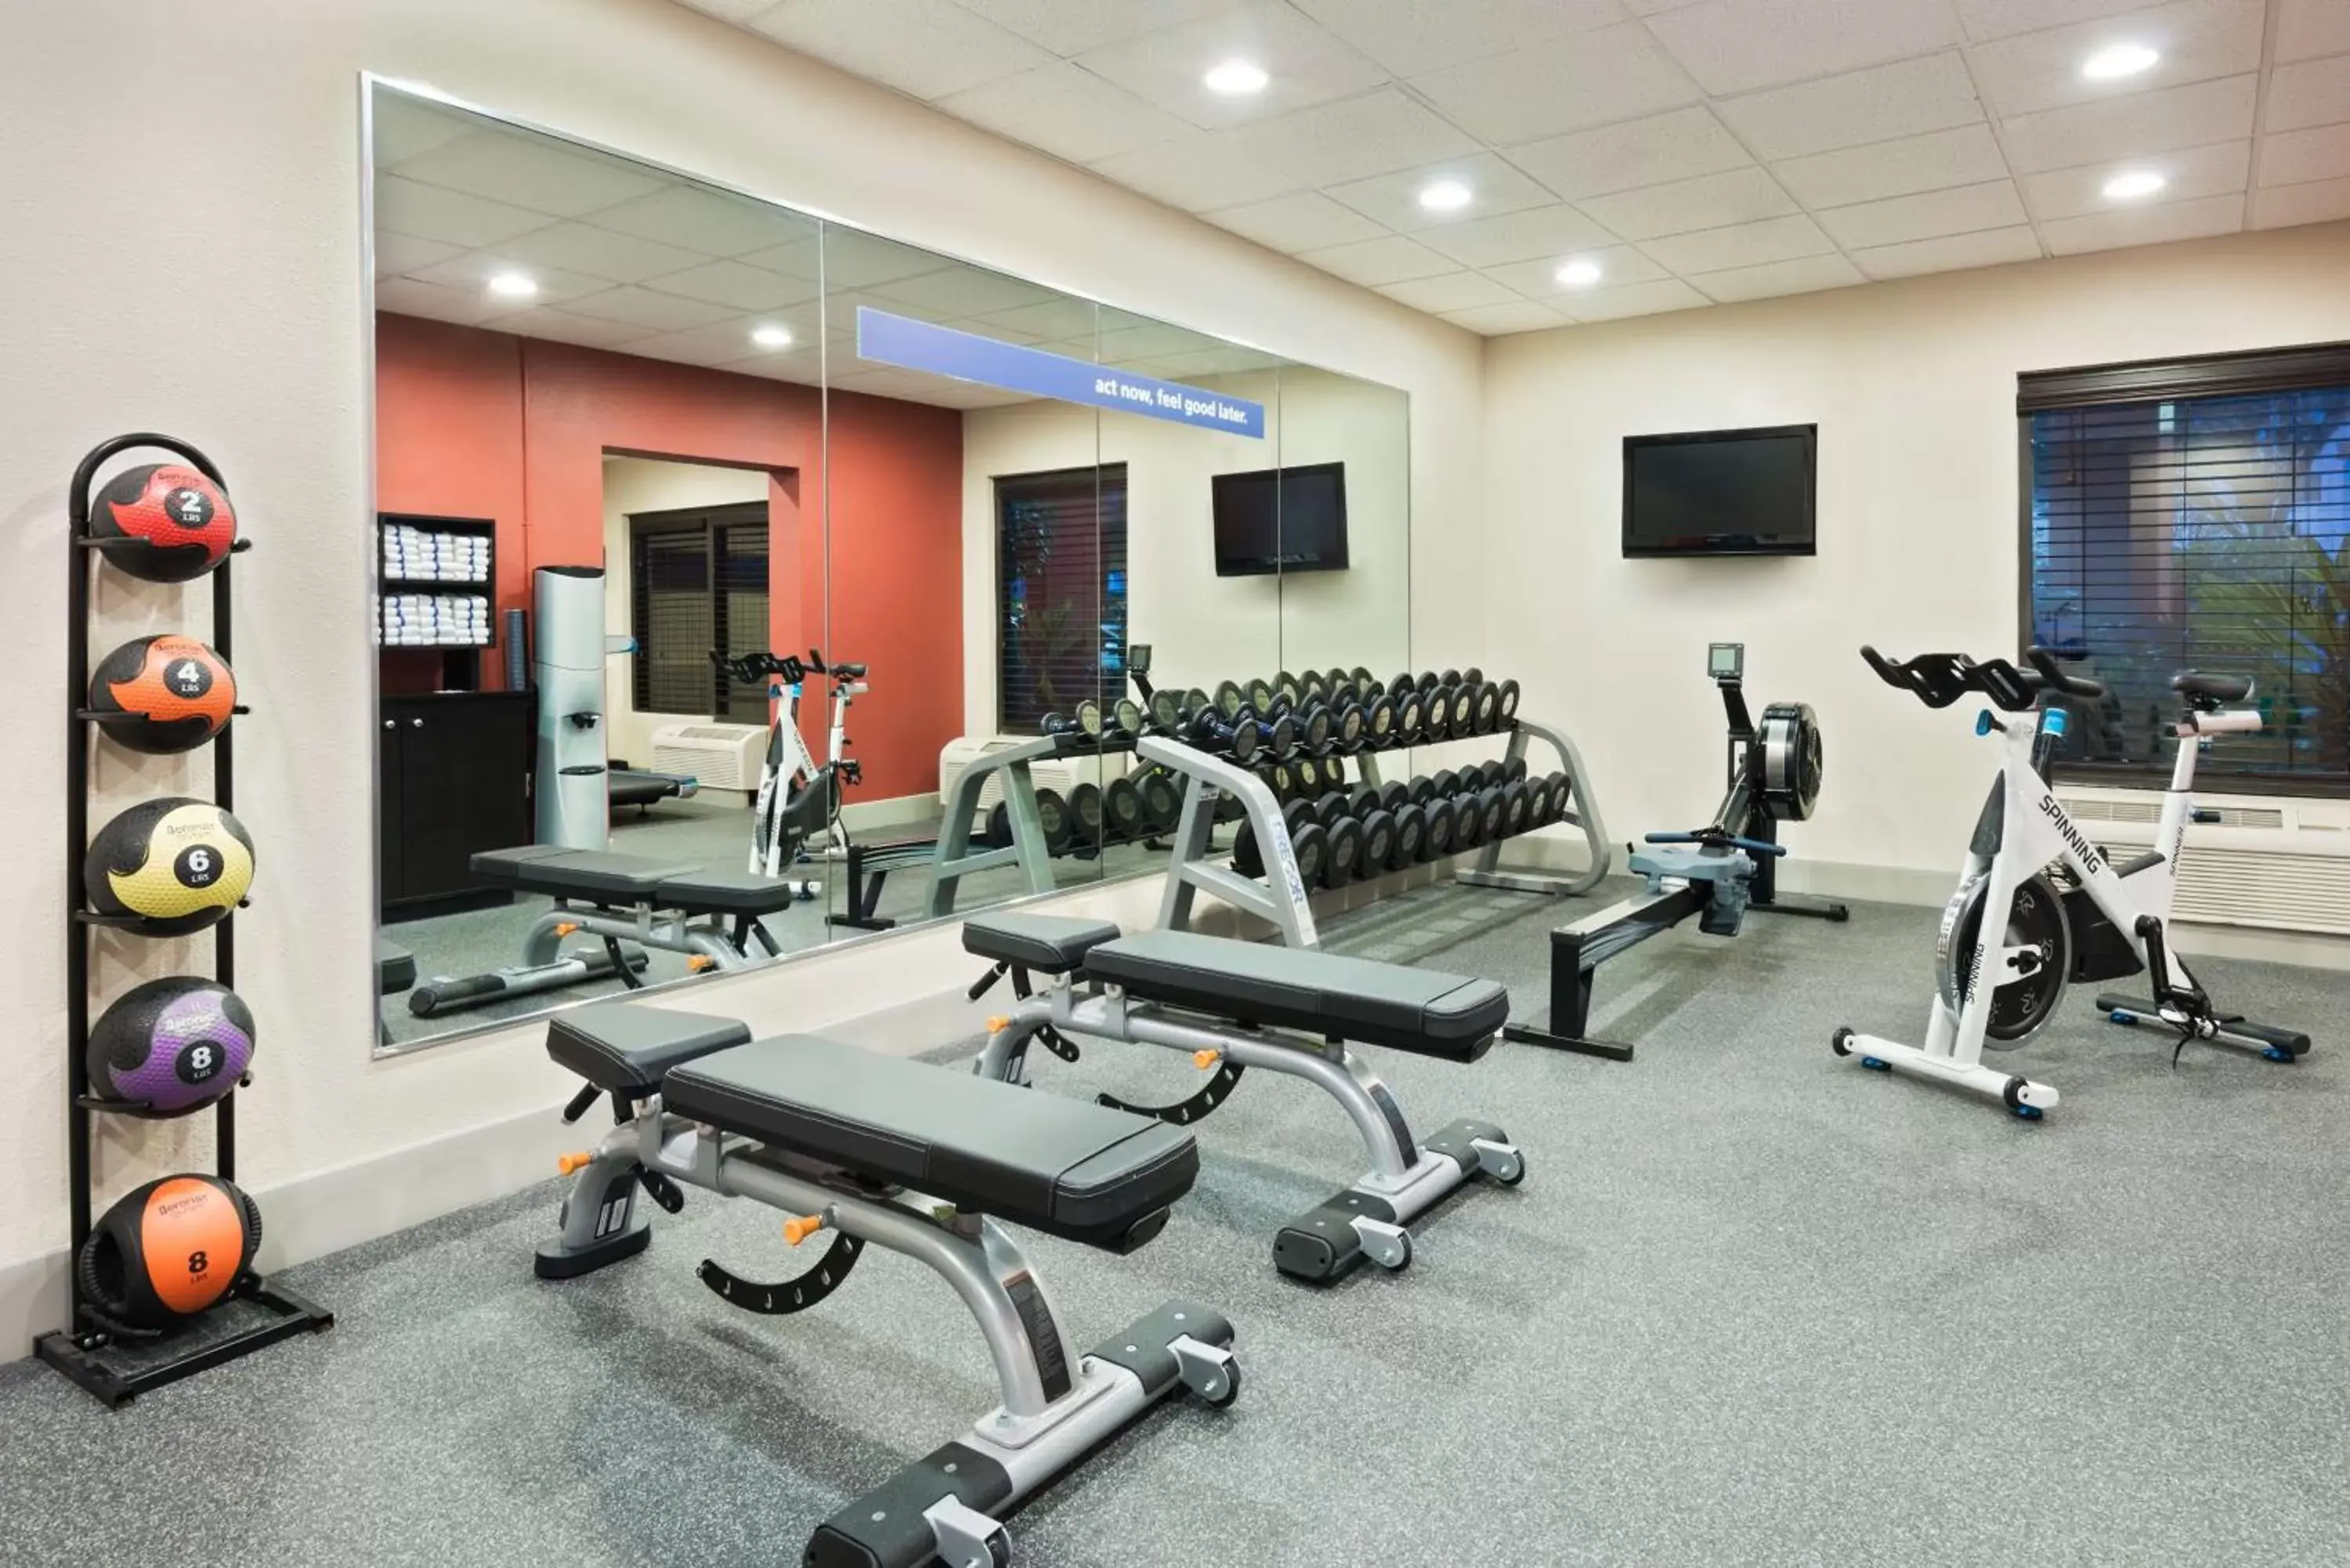 Fitness centre/facilities, Fitness Center/Facilities in Hampton Inn Ellenton/Bradenton